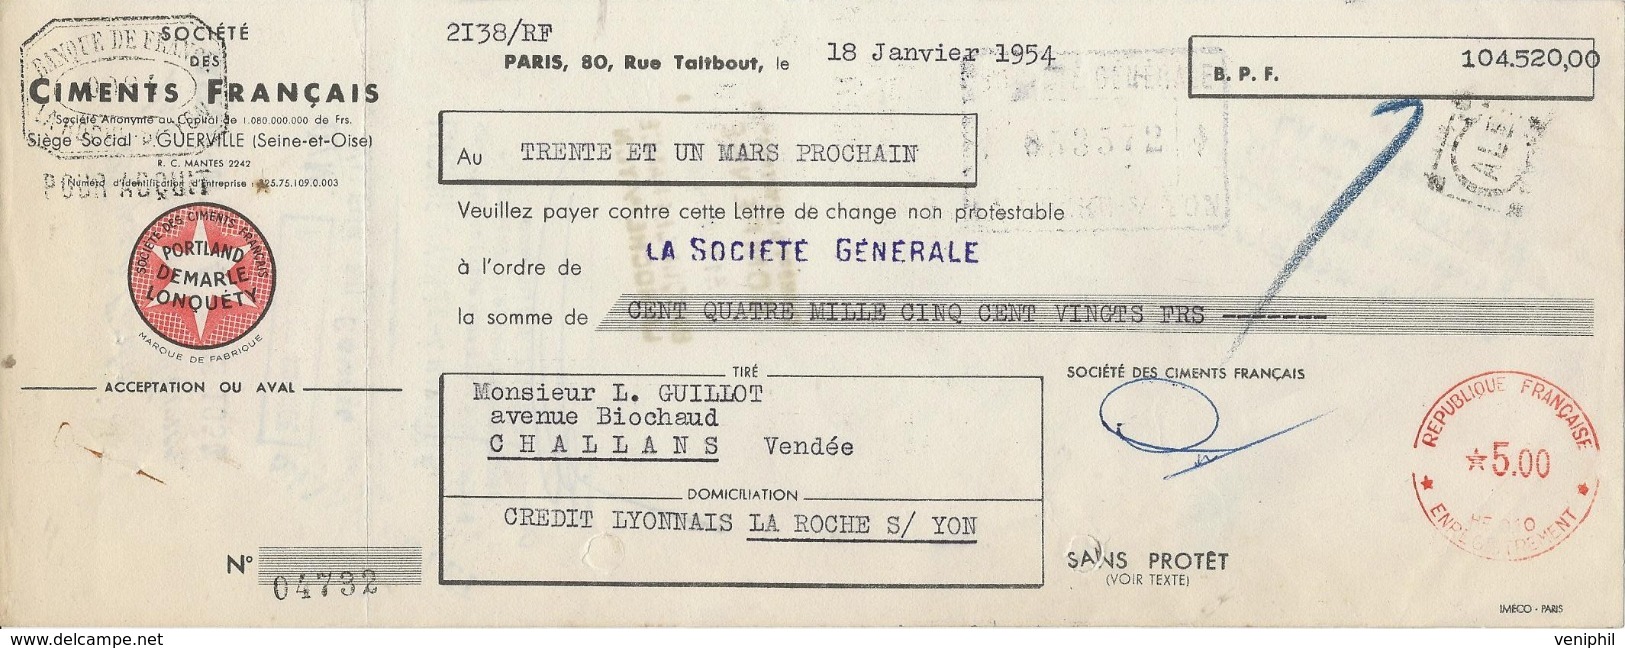 3 LETTRES DE CHANGE - CIMENTS FRANCAIS -BOULOGNE SUR MER -1922-33-54 - Bills Of Exchange